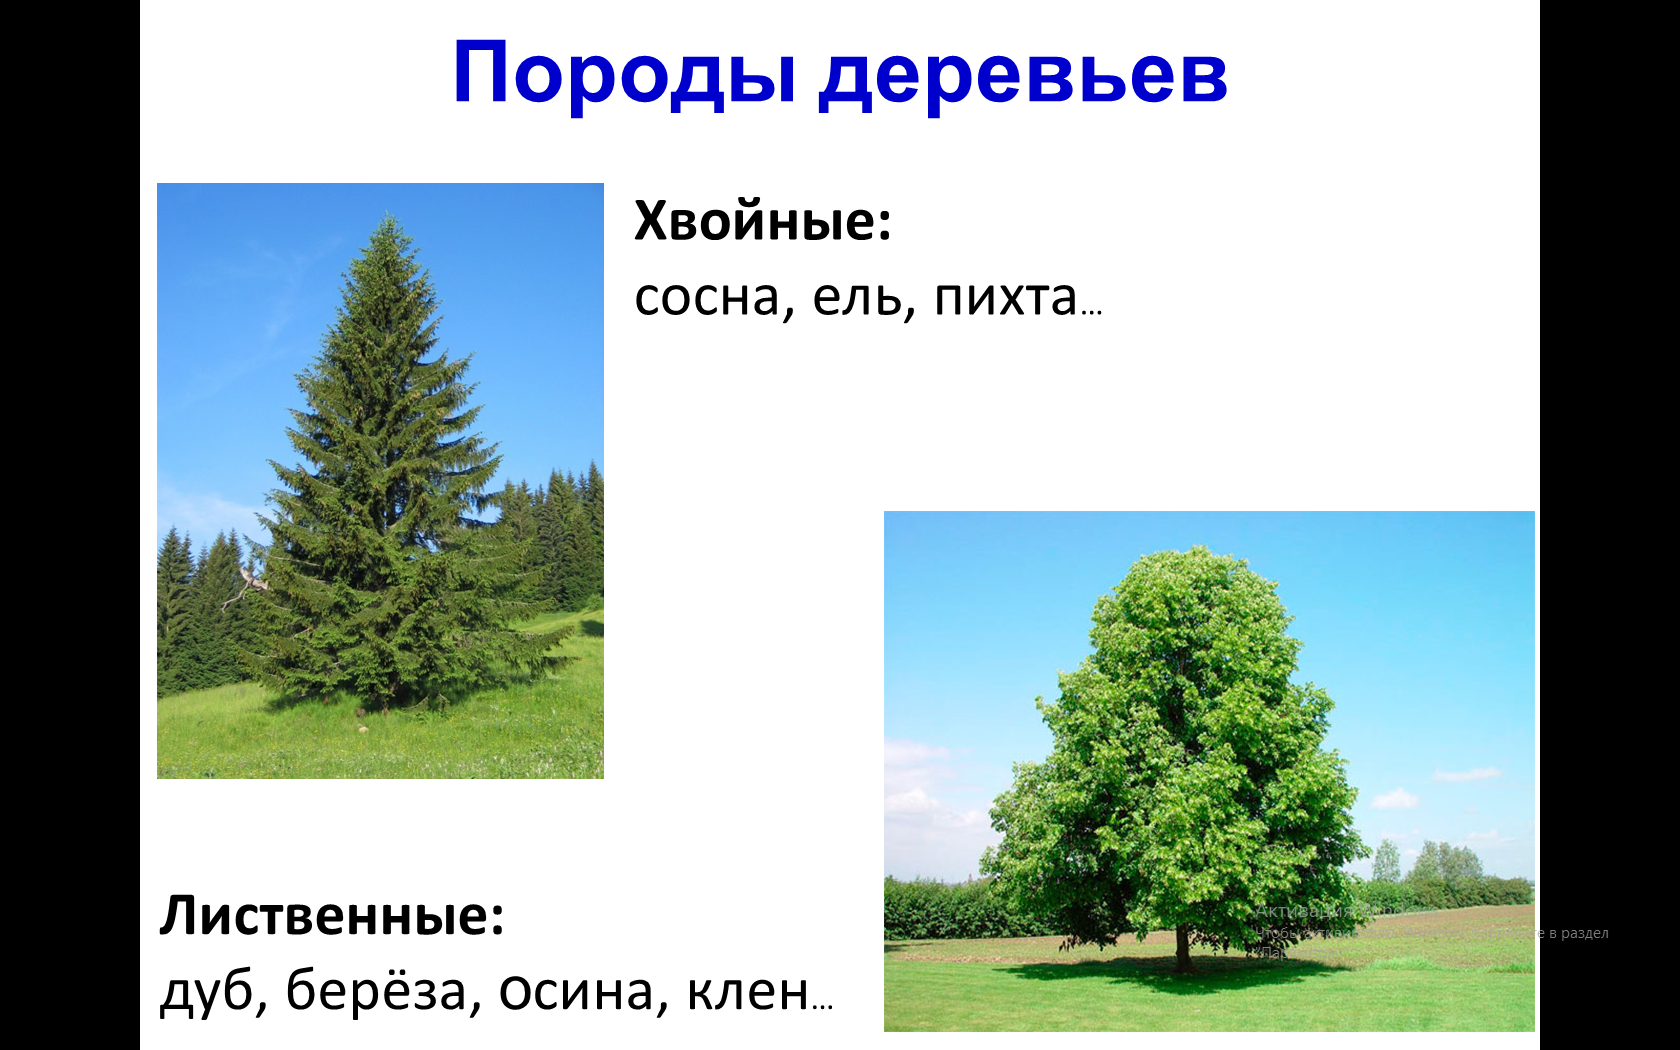 Хвойные и лиственные породы деревьев